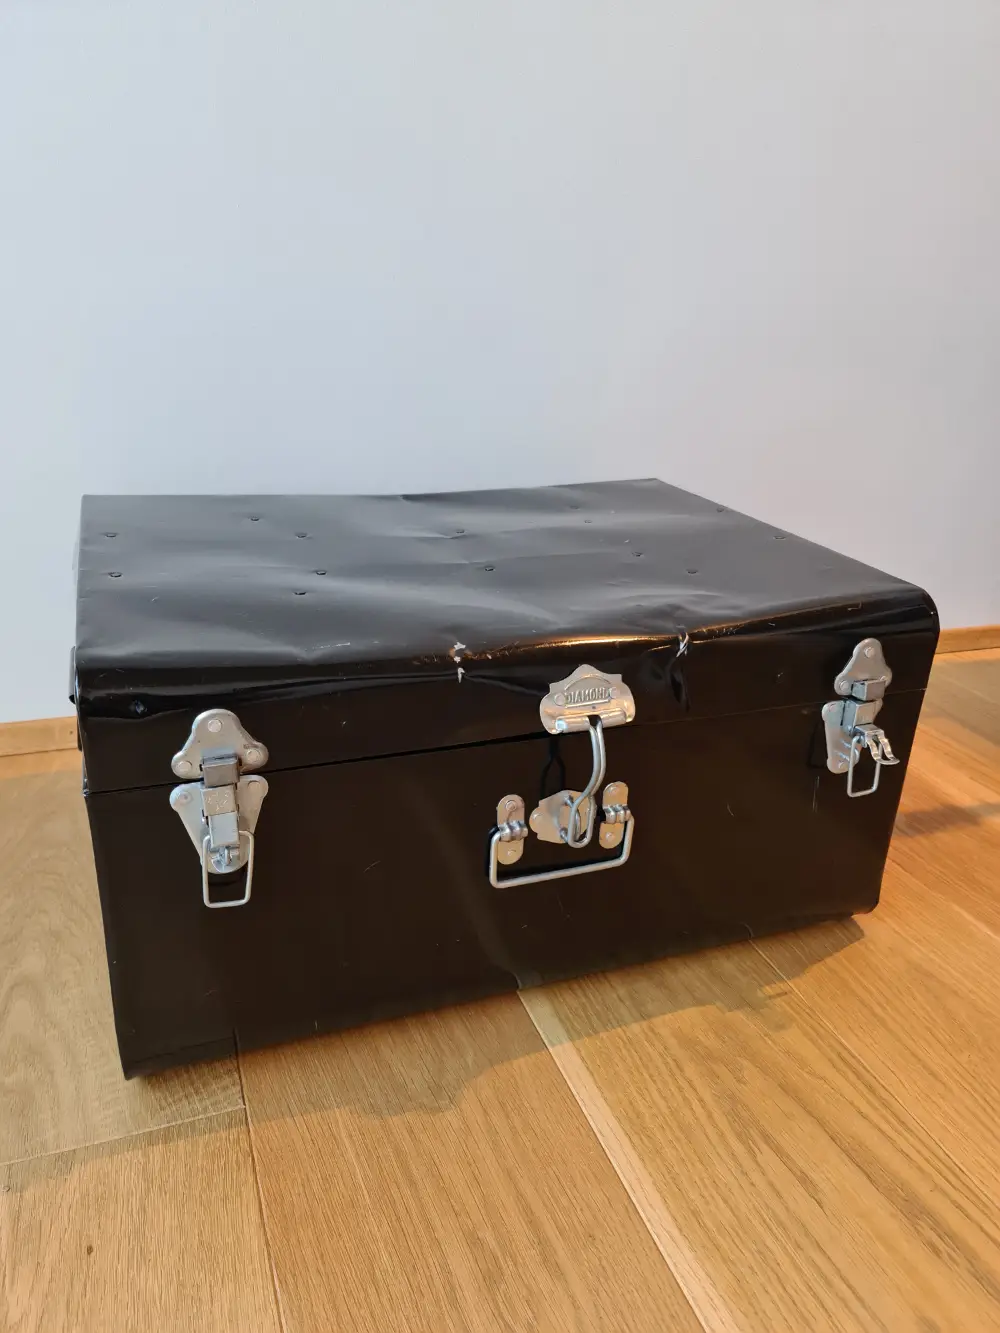 Køb Grene Metal kuffert stor af Vicki på Reshopper · secondhand til børn, mor og bolig